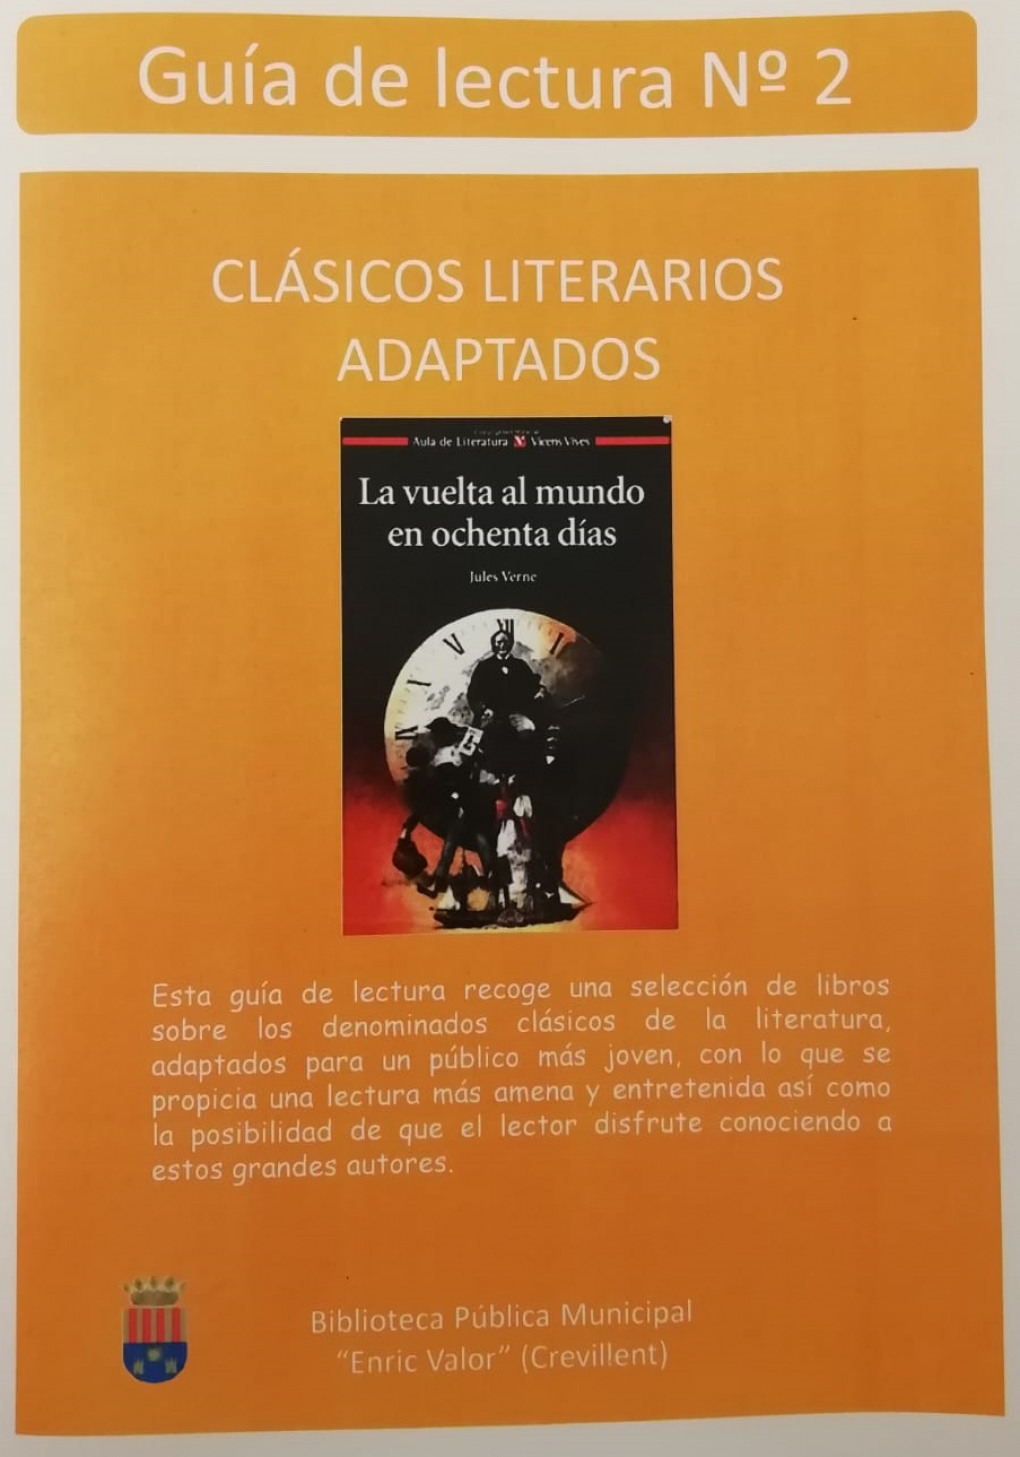 La Biblioteca Municipal presenta la Guía de Lectura nº2 “Clásicos literarios adaptados”